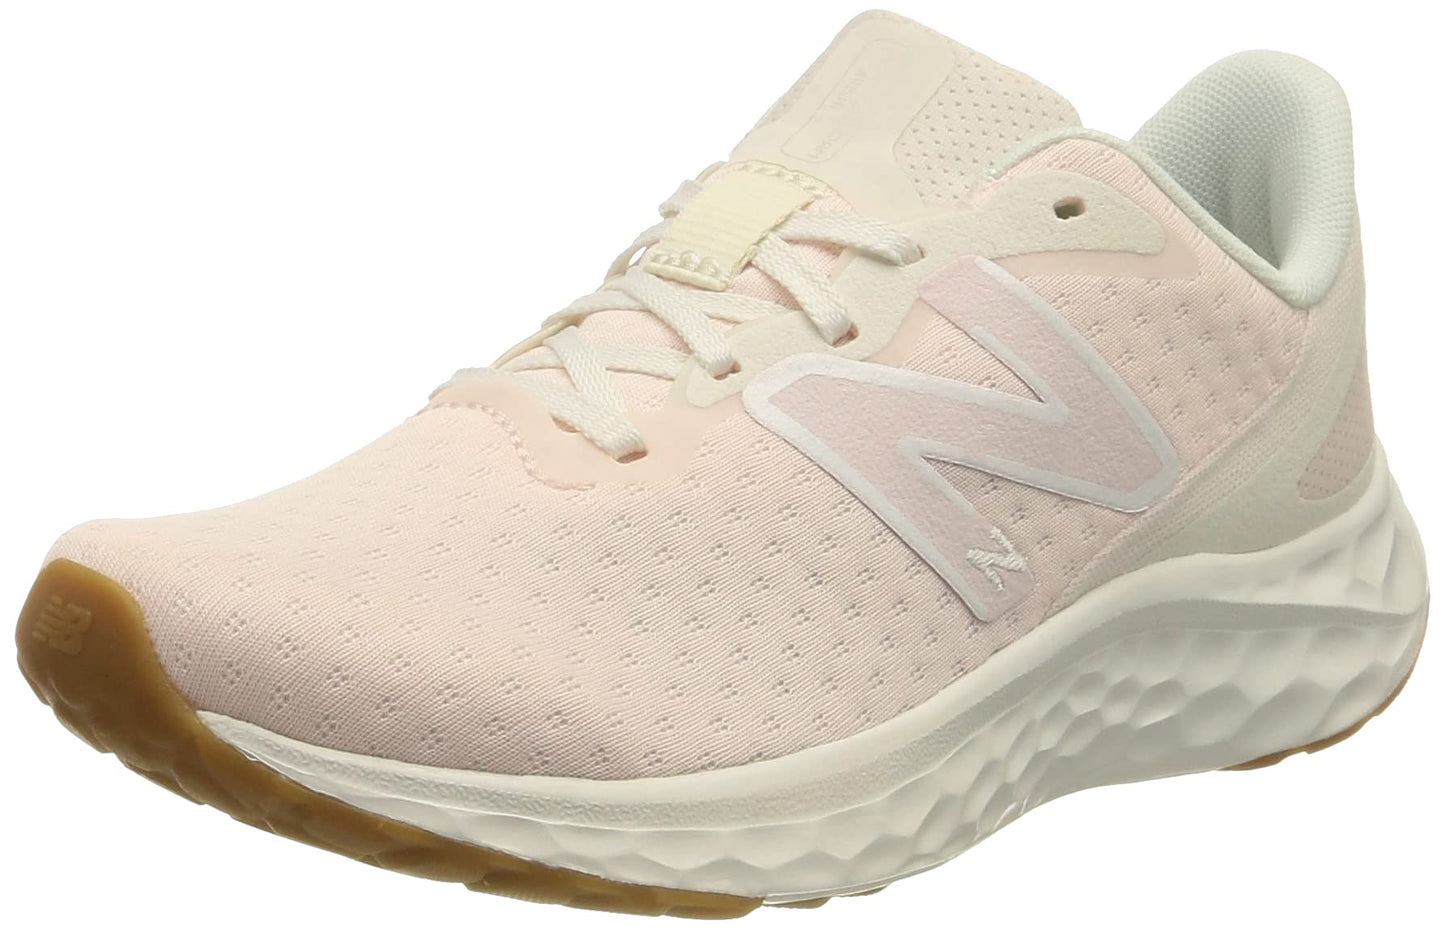 New Balance Women's Fresh Foam Arishi V4 Running Shoe, Washed Pink/Gum, 5.5 Wide